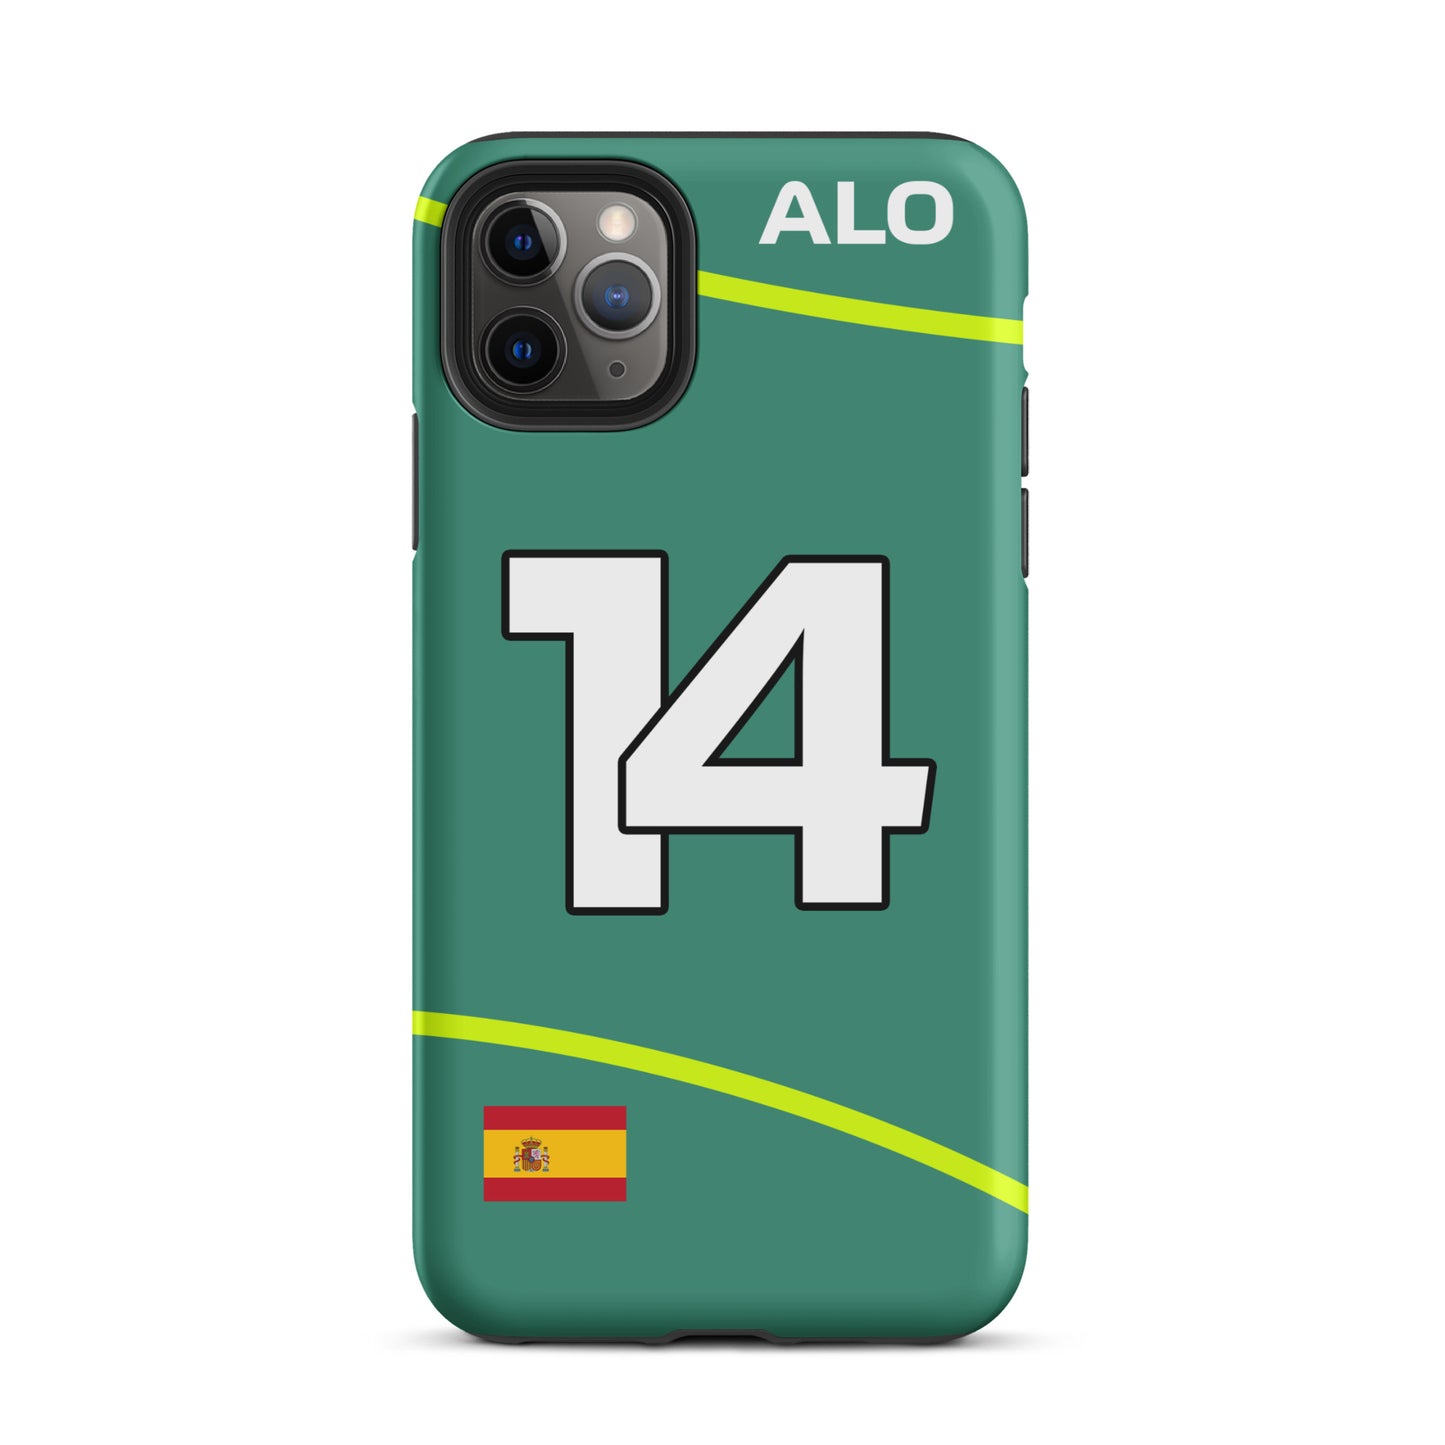 Fernando Alonso Aston Martin Tough iPhone Case 11 pro max